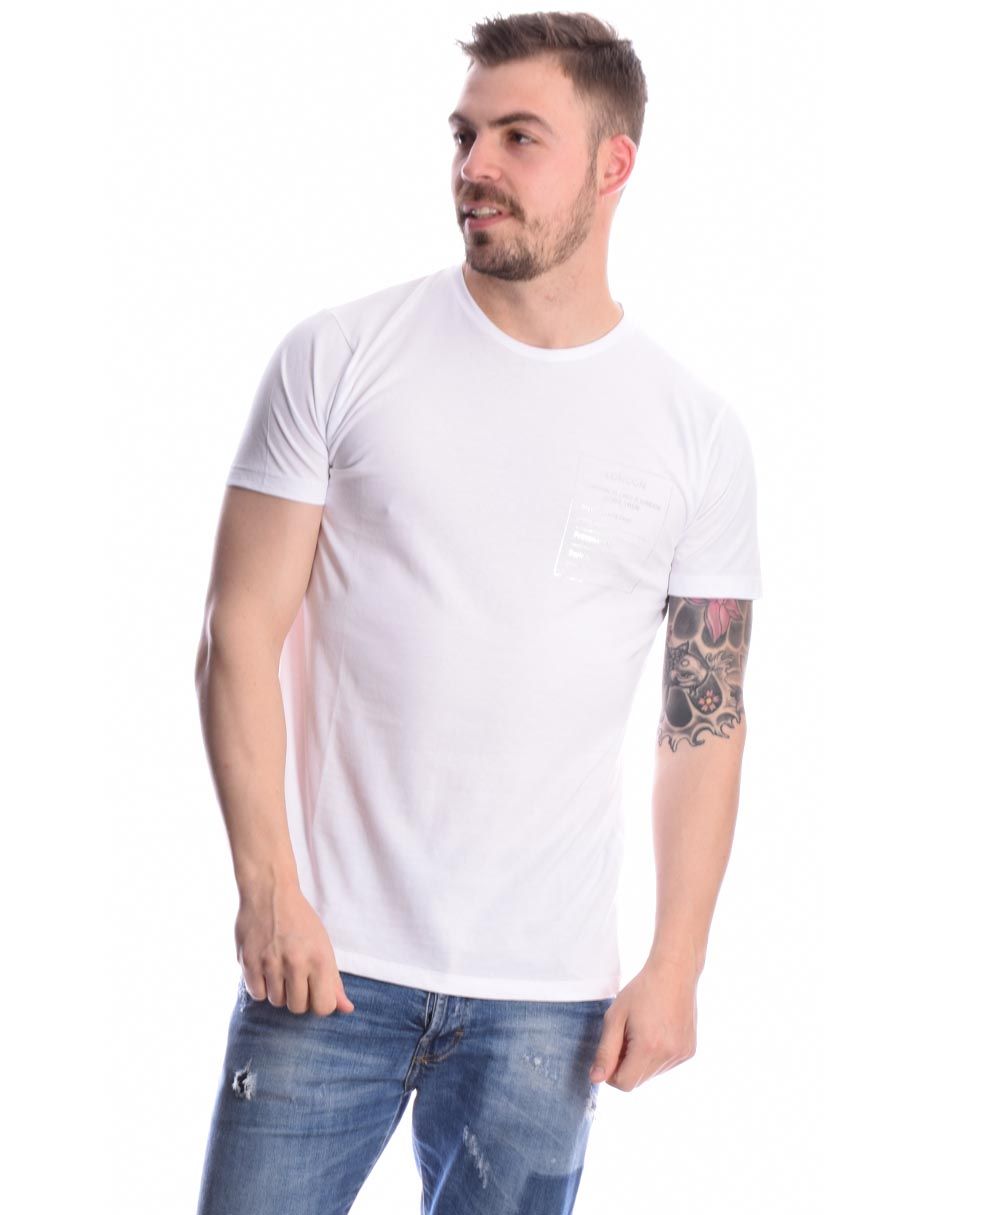 leuko white t-shirt imperial italy 2021